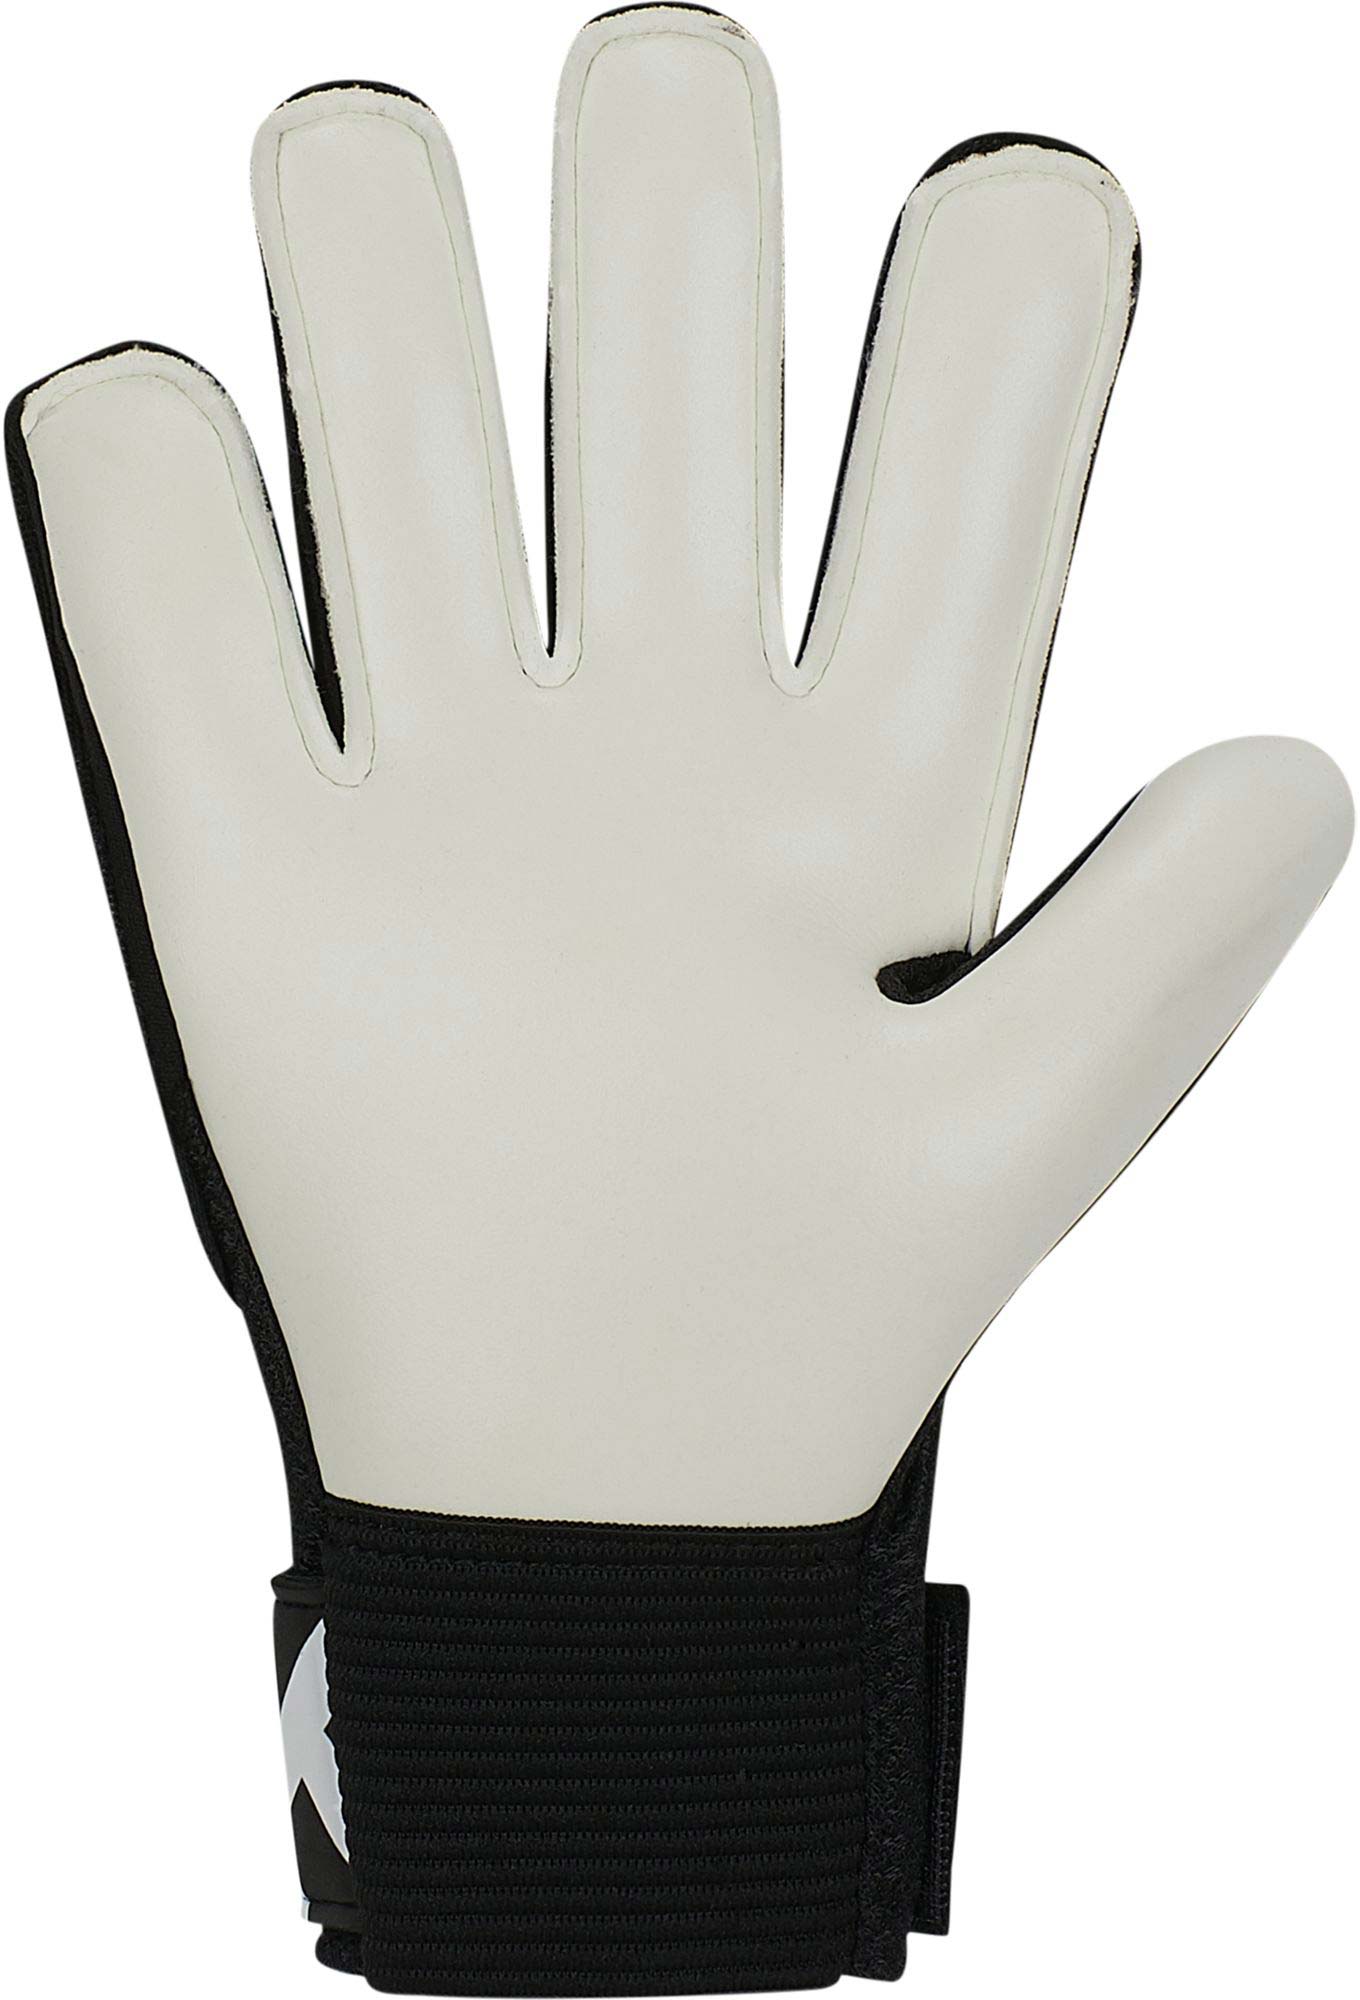 Kids' goalkeeper gloves